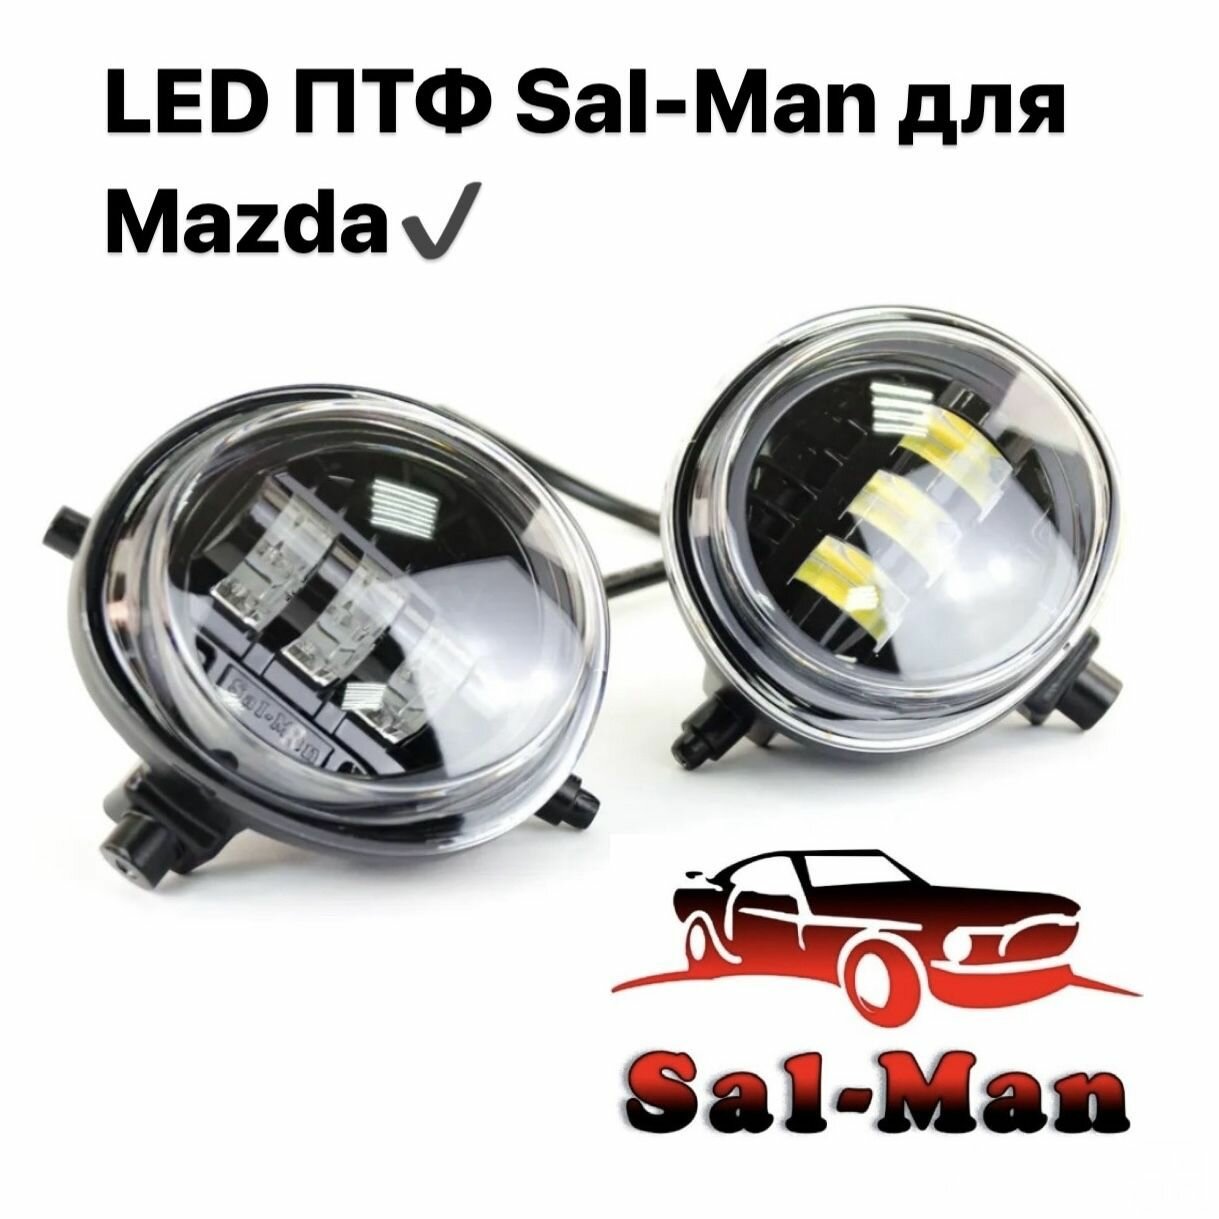 Противотуманные фары LED светодиодные Sal-man Двухрежимные белый/жёлтый свет, 50w, Mazda 3, 6, CX-5, CX-7, CX-10